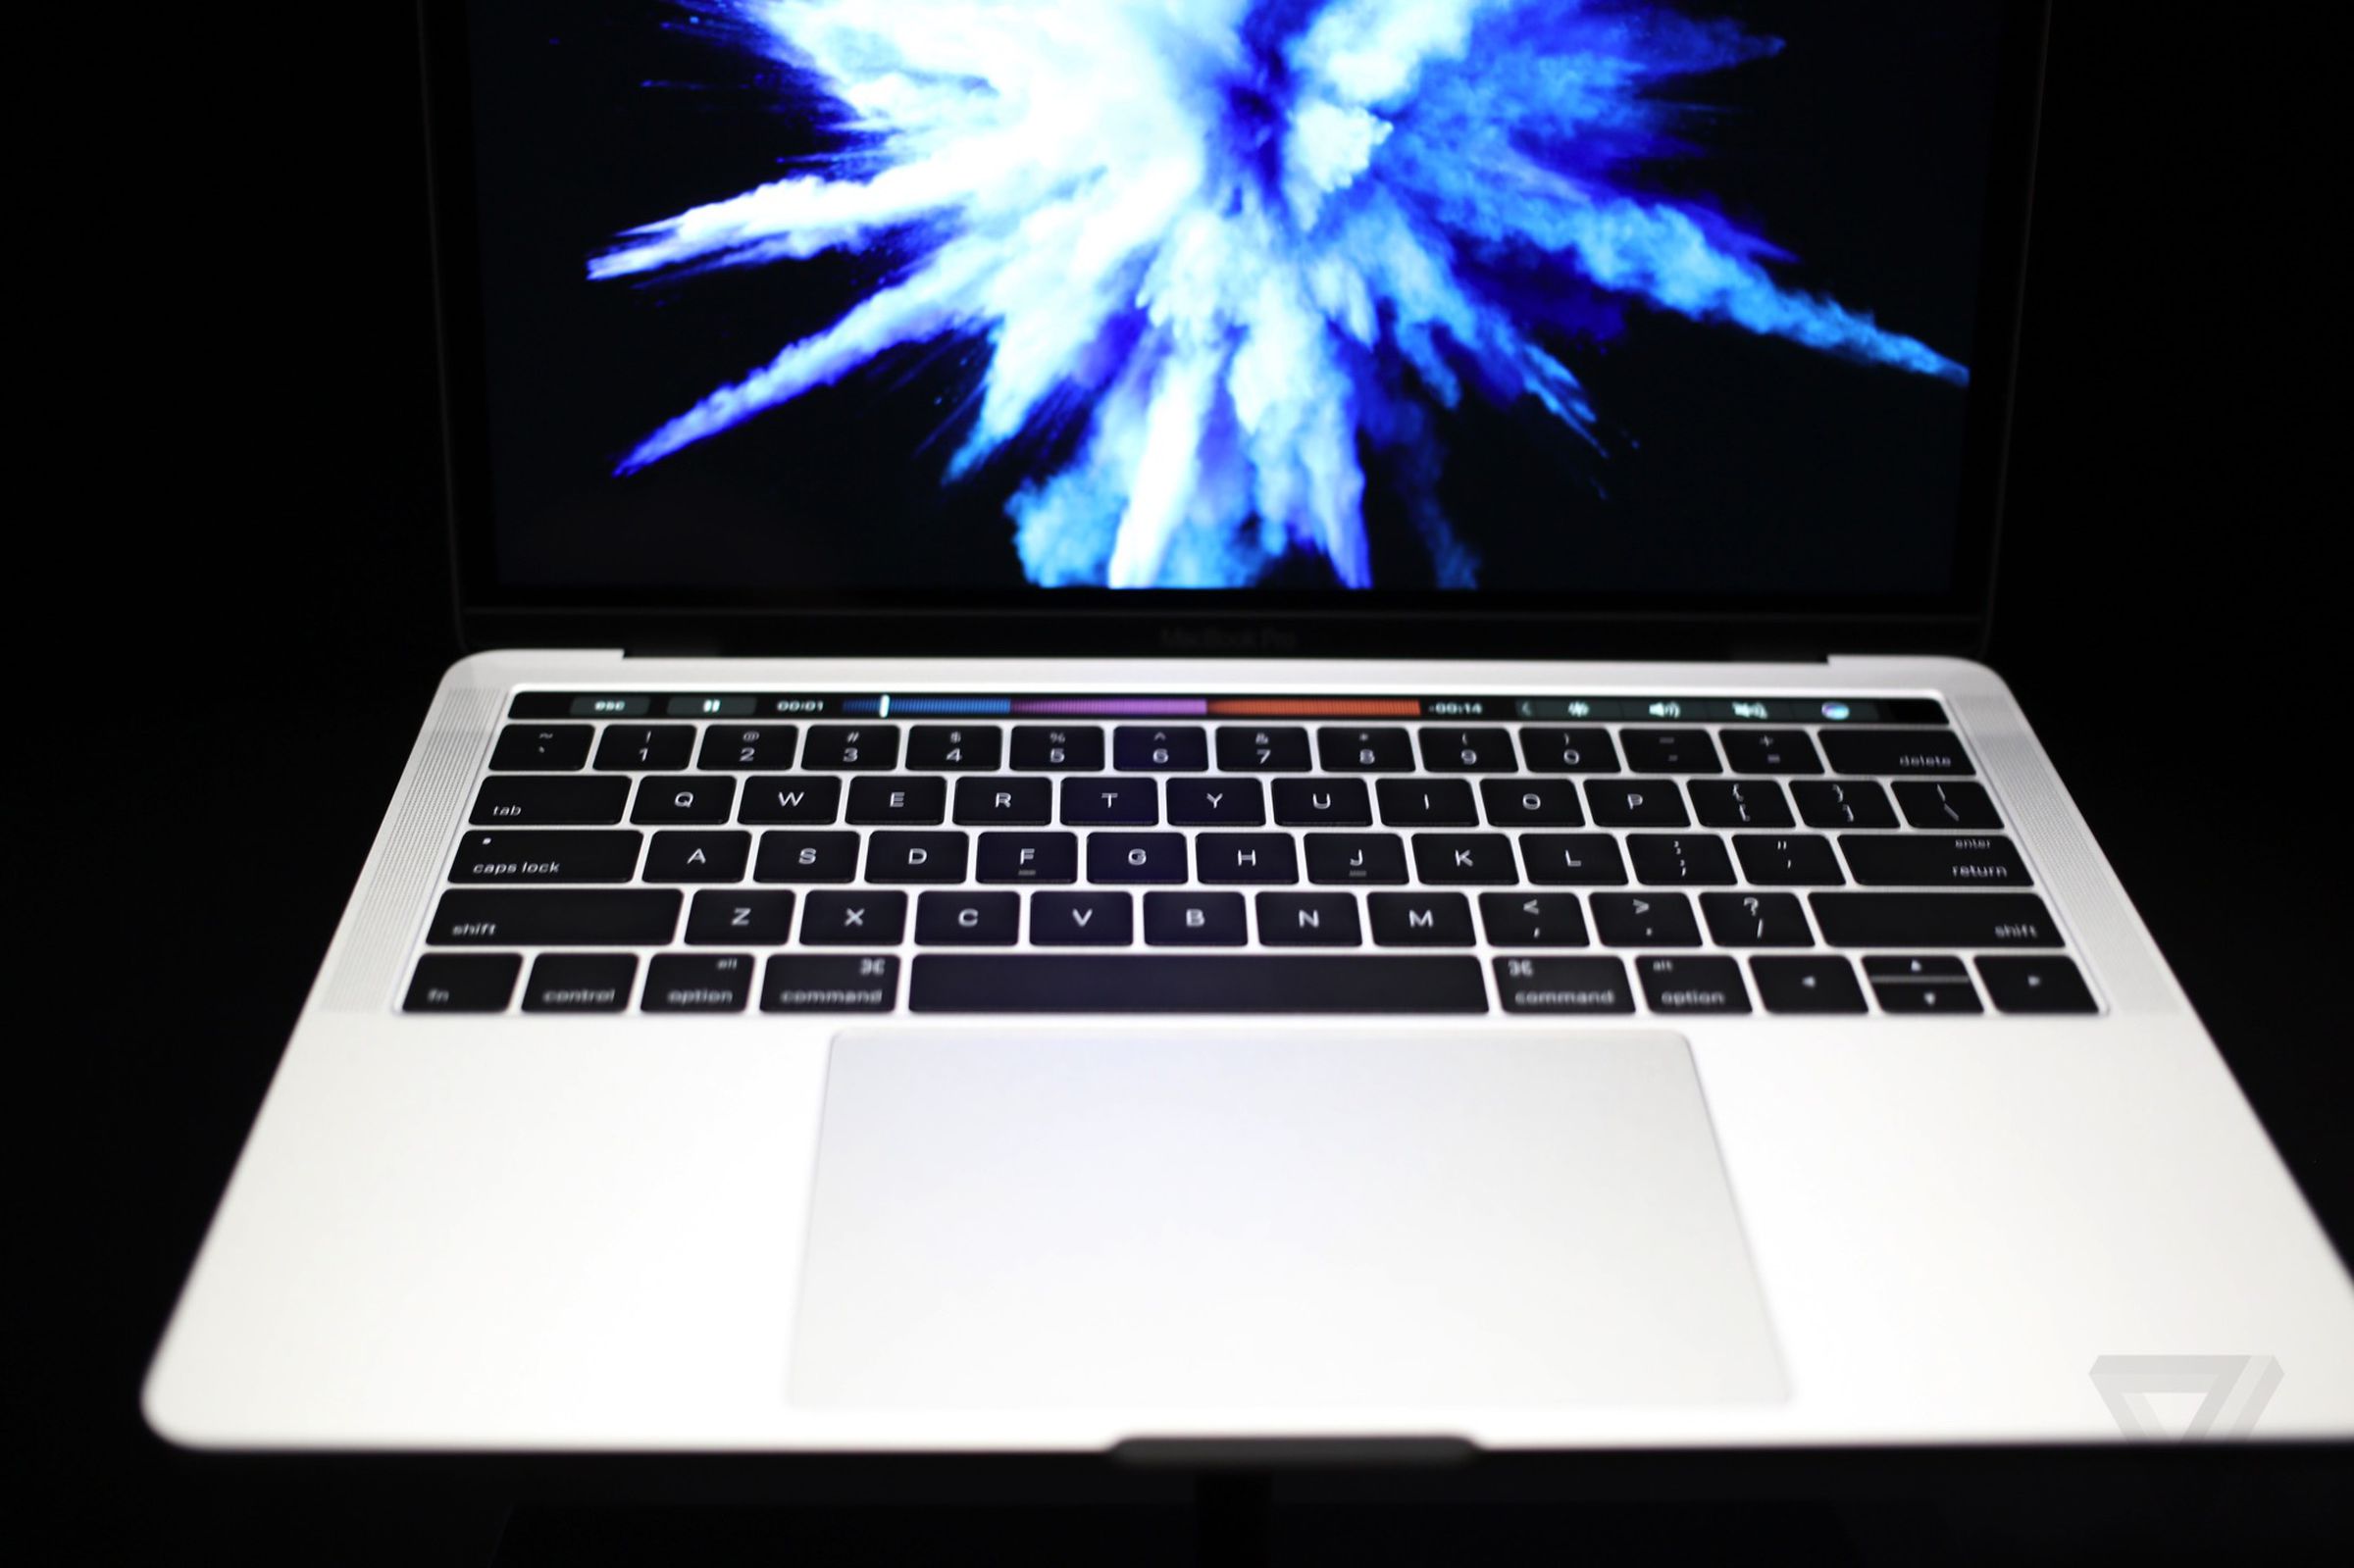 MacBook Pro 2016 hands-on photos